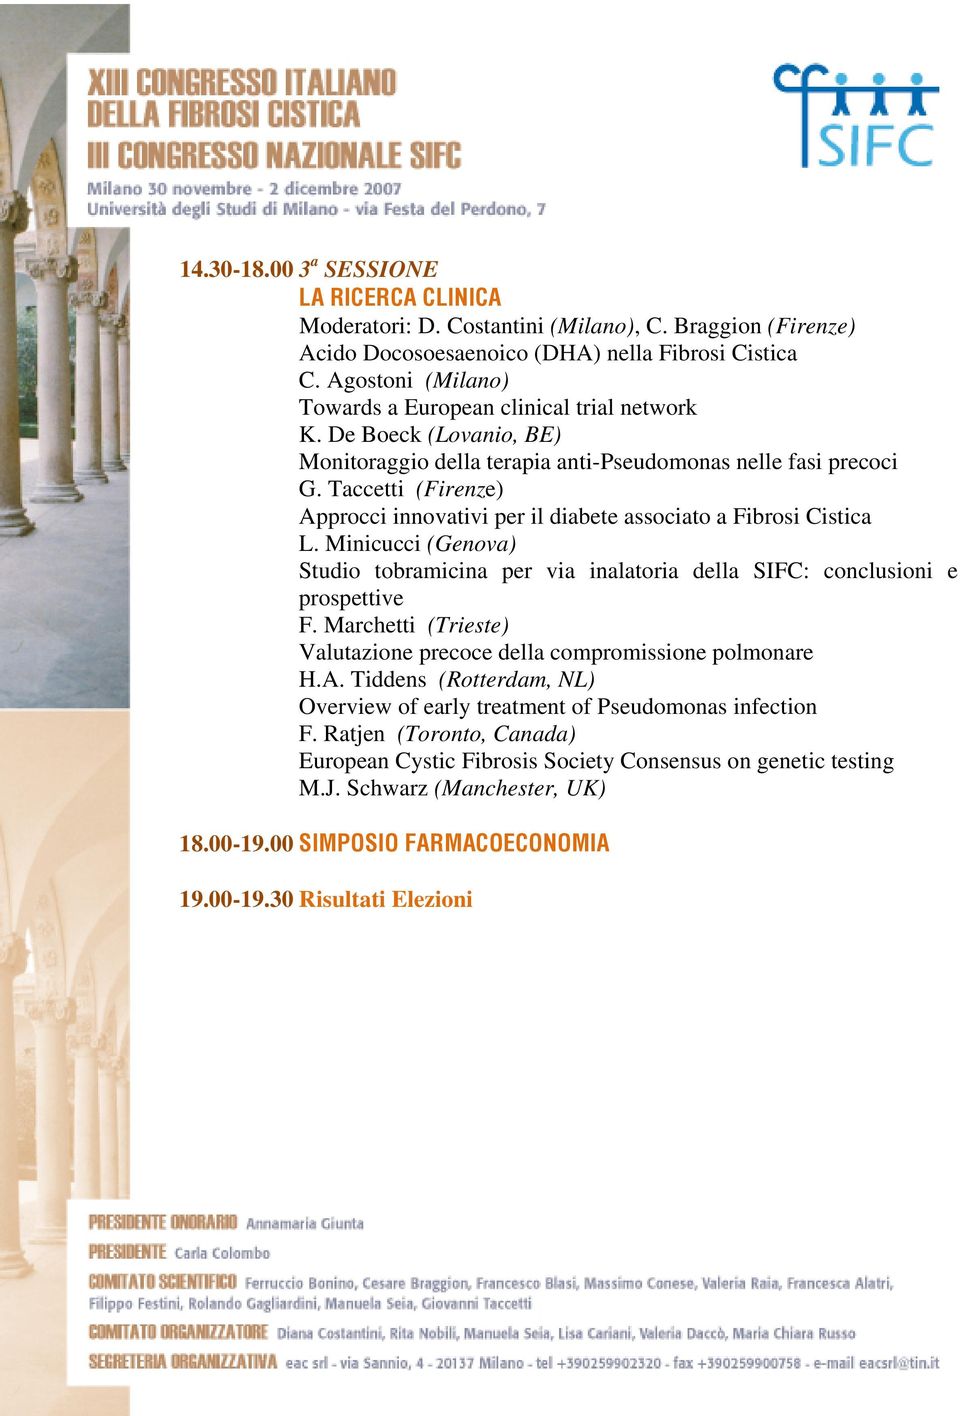 Taccetti (Firenze) Approcci innovativi per il diabete associato a Fibrosi Cistica L. Minicucci (Genova) Studio tobramicina per via inalatoria della SIFC: conclusioni e prospettive F.